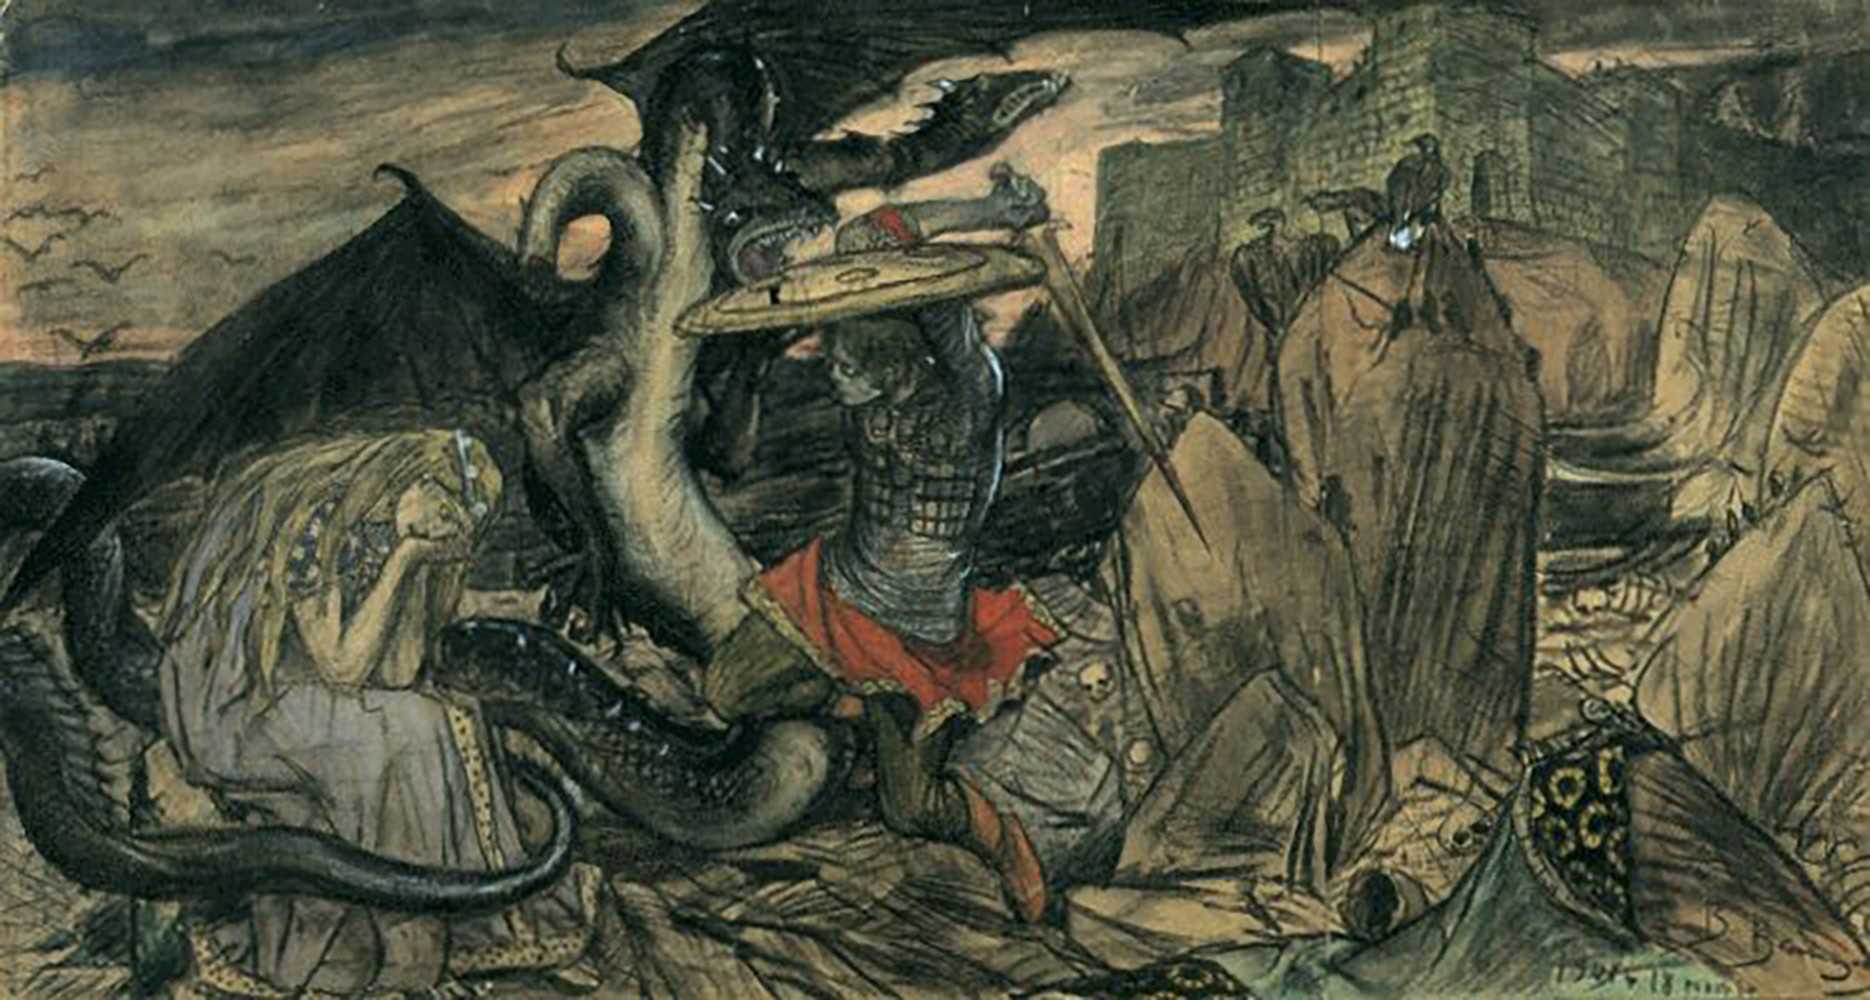 Васнецов бой Добрыни Никитича с Семиглавым змеем Горынычем